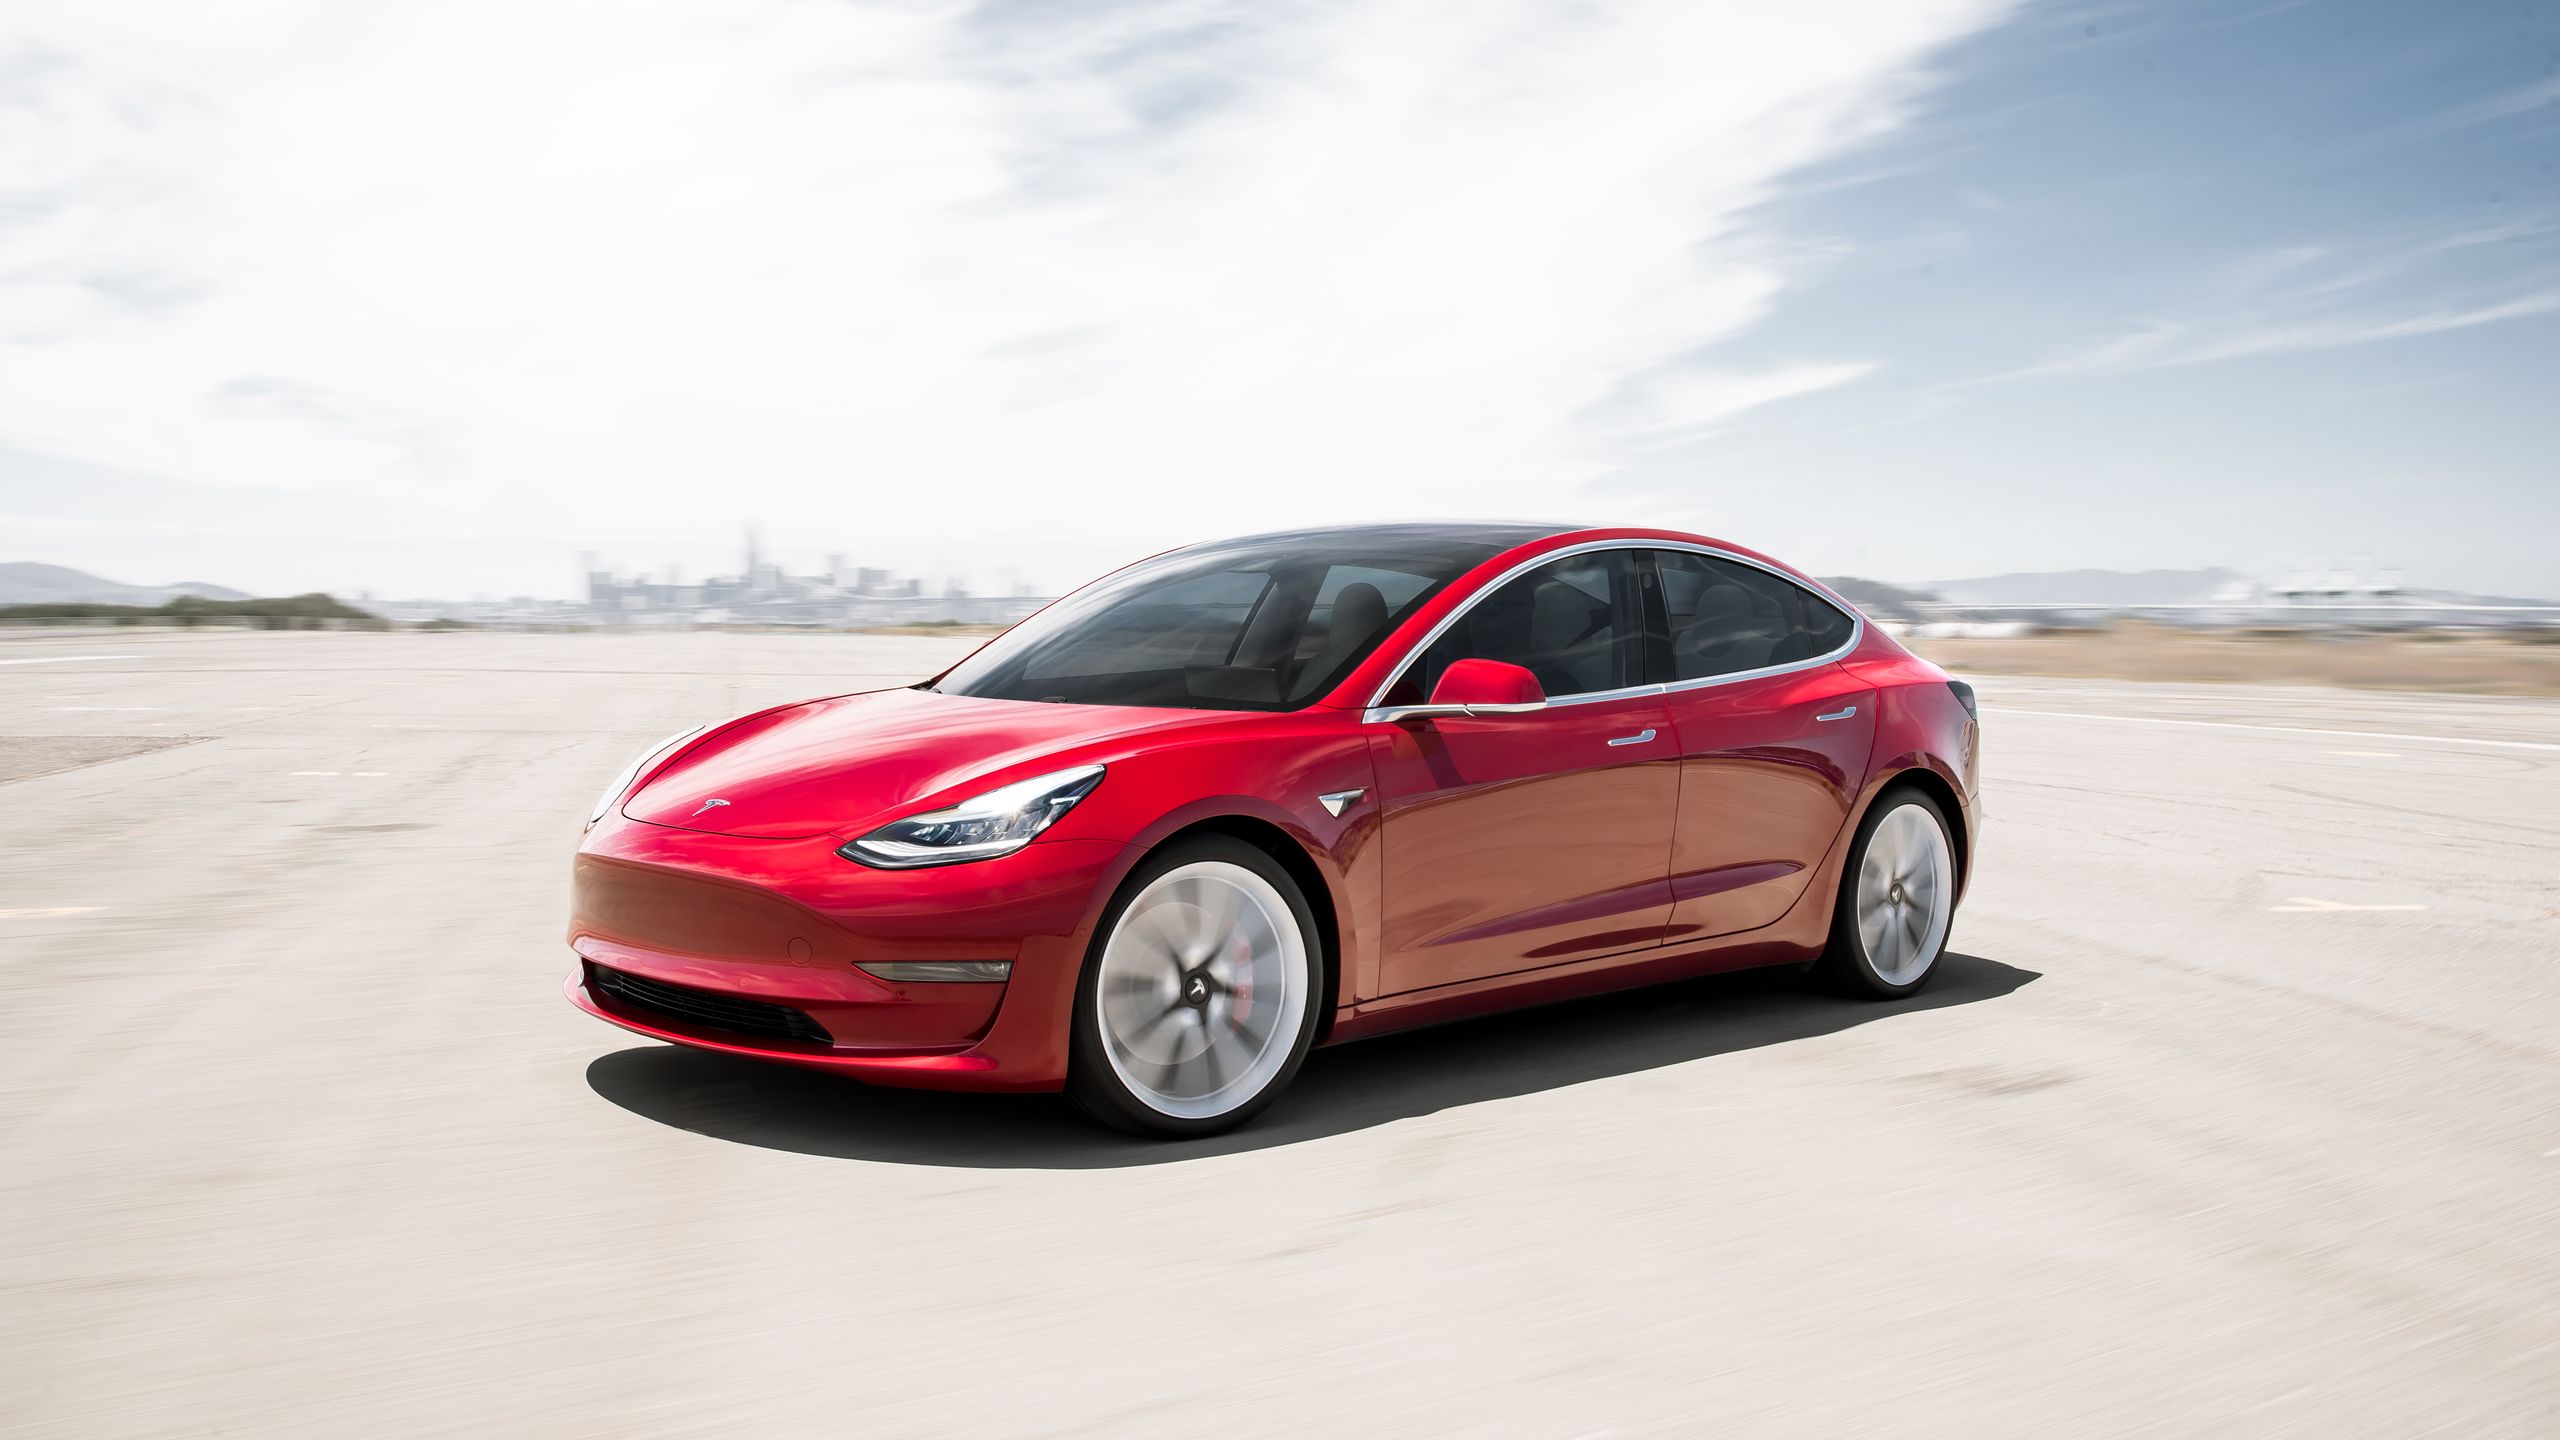 Les accessoires pour la Model 3 (hors recharge) - Tesla Model 3 - Forum  Automobile Propre